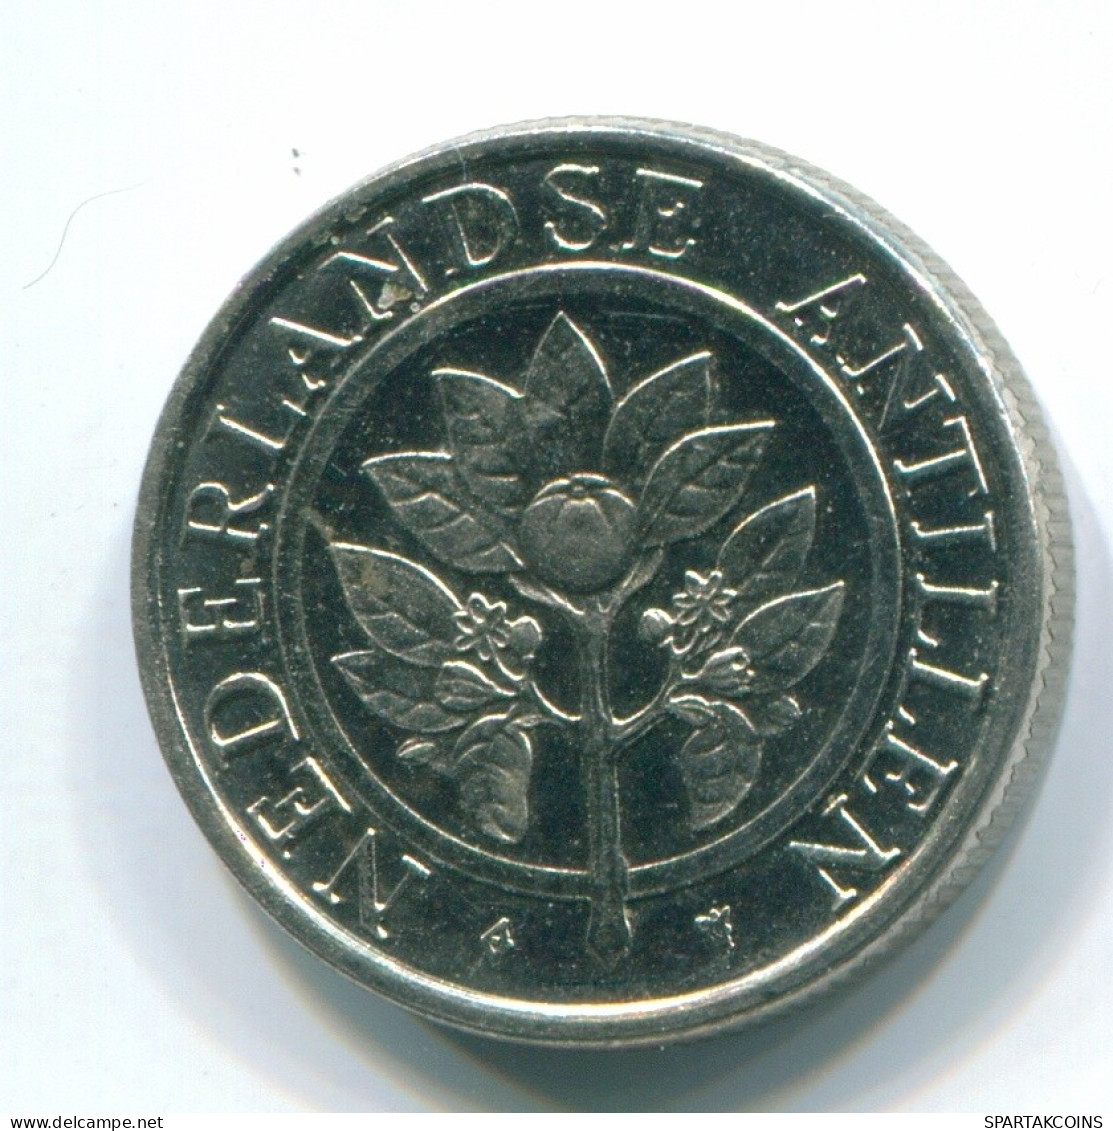 10 CENTS 1989 NETHERLANDS ANTILLES Nickel Colonial Coin #S11313.U.A - Niederländische Antillen